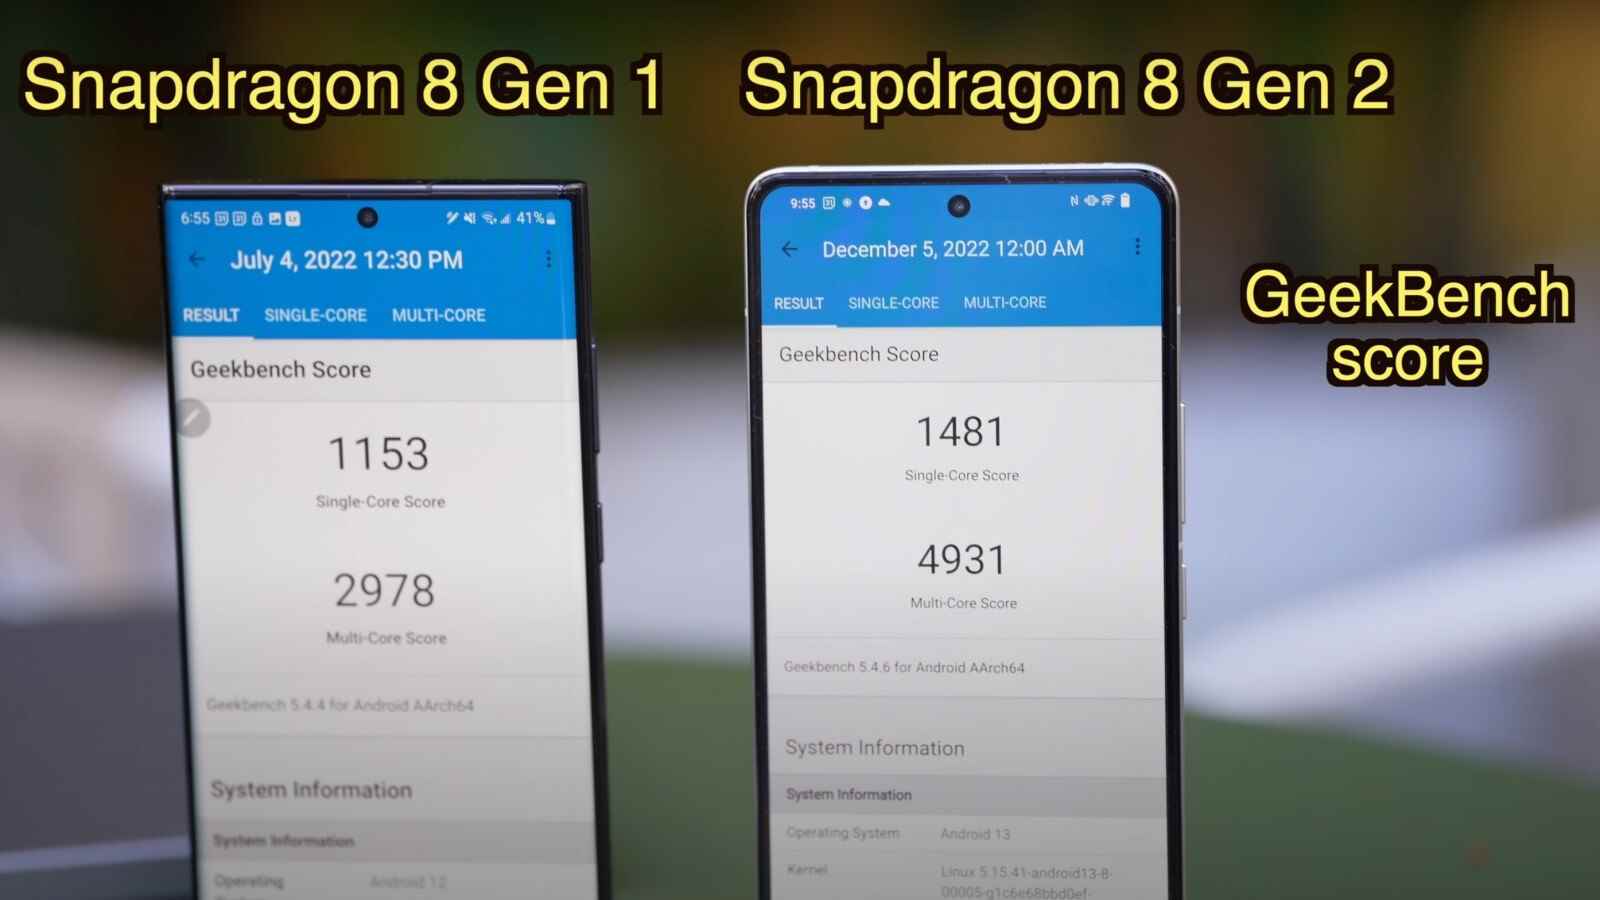 Snapdragon 8 Gen 2-Benchmarks lassen Googles Pixel 7 keine Chance – Bild mit freundlicher Genehmigung von Ben Sin.  - Macht über Gehirne!  Supergeladenes Galaxy S23, um Kreise um Pixel 7 zu drehen;  Tensor 2 im Staub gelassen